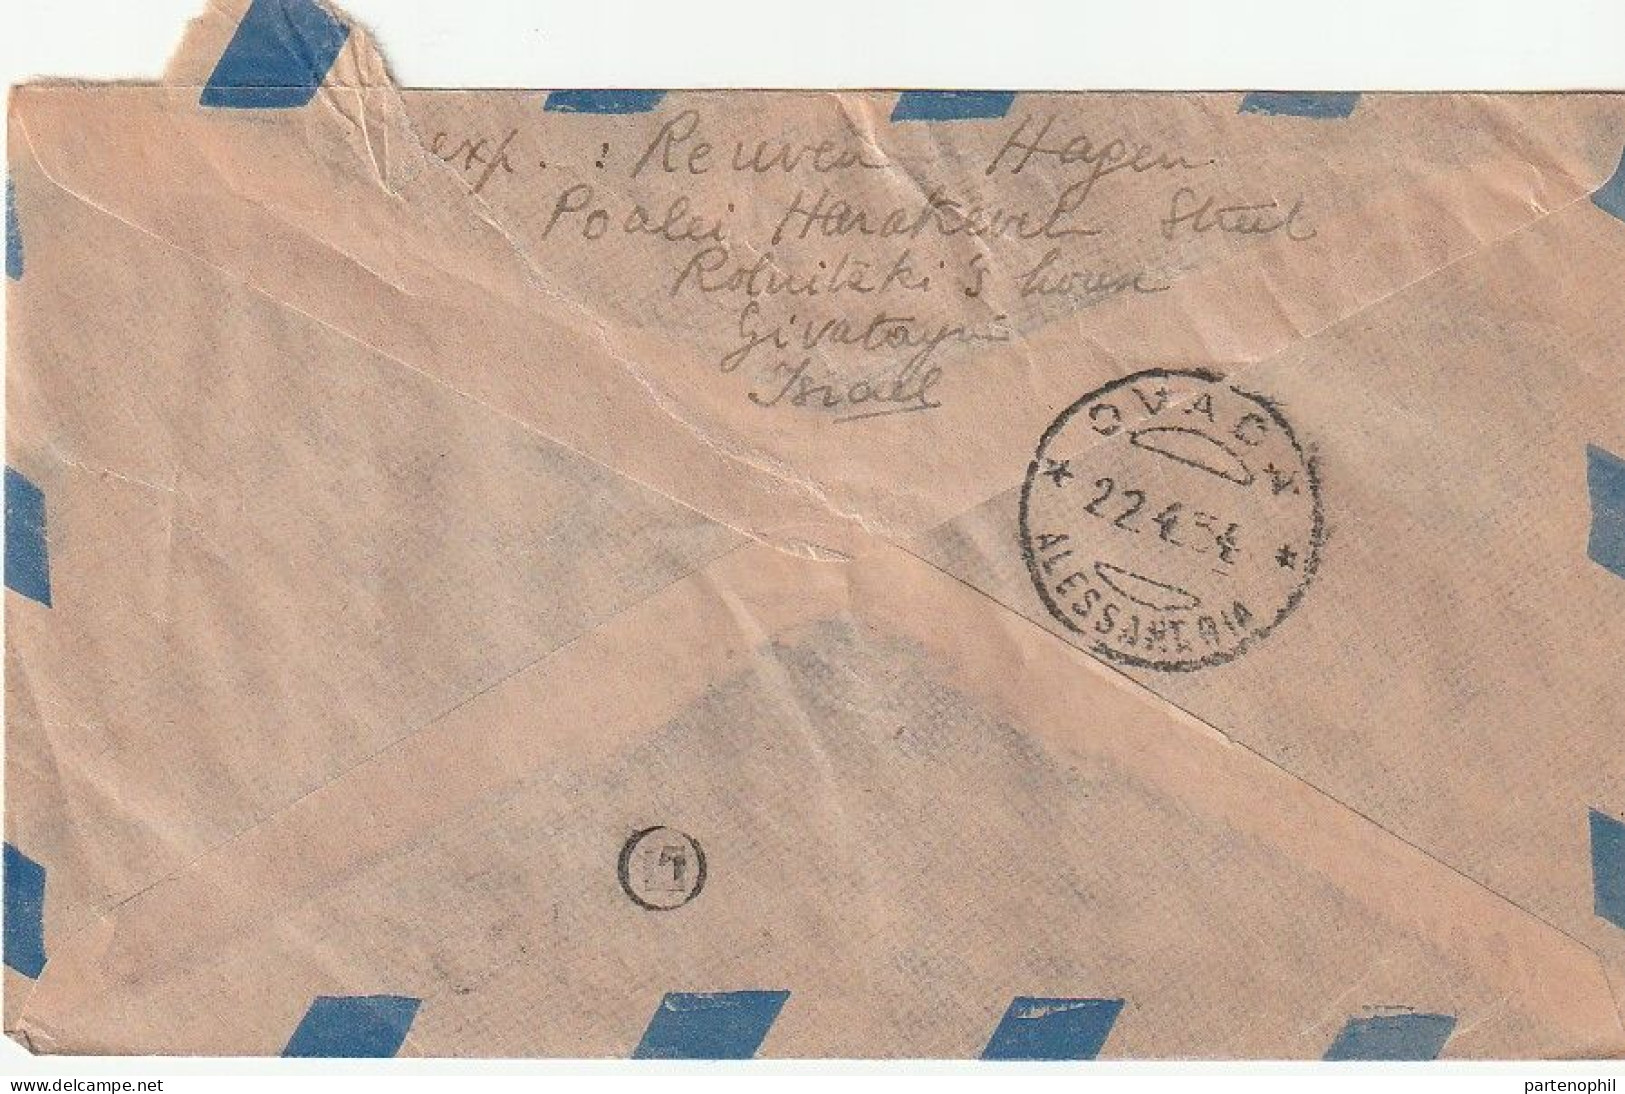 Israel 1954  -  Postgeschichte - Storia Postale - Histoire Postale - Brieven En Documenten